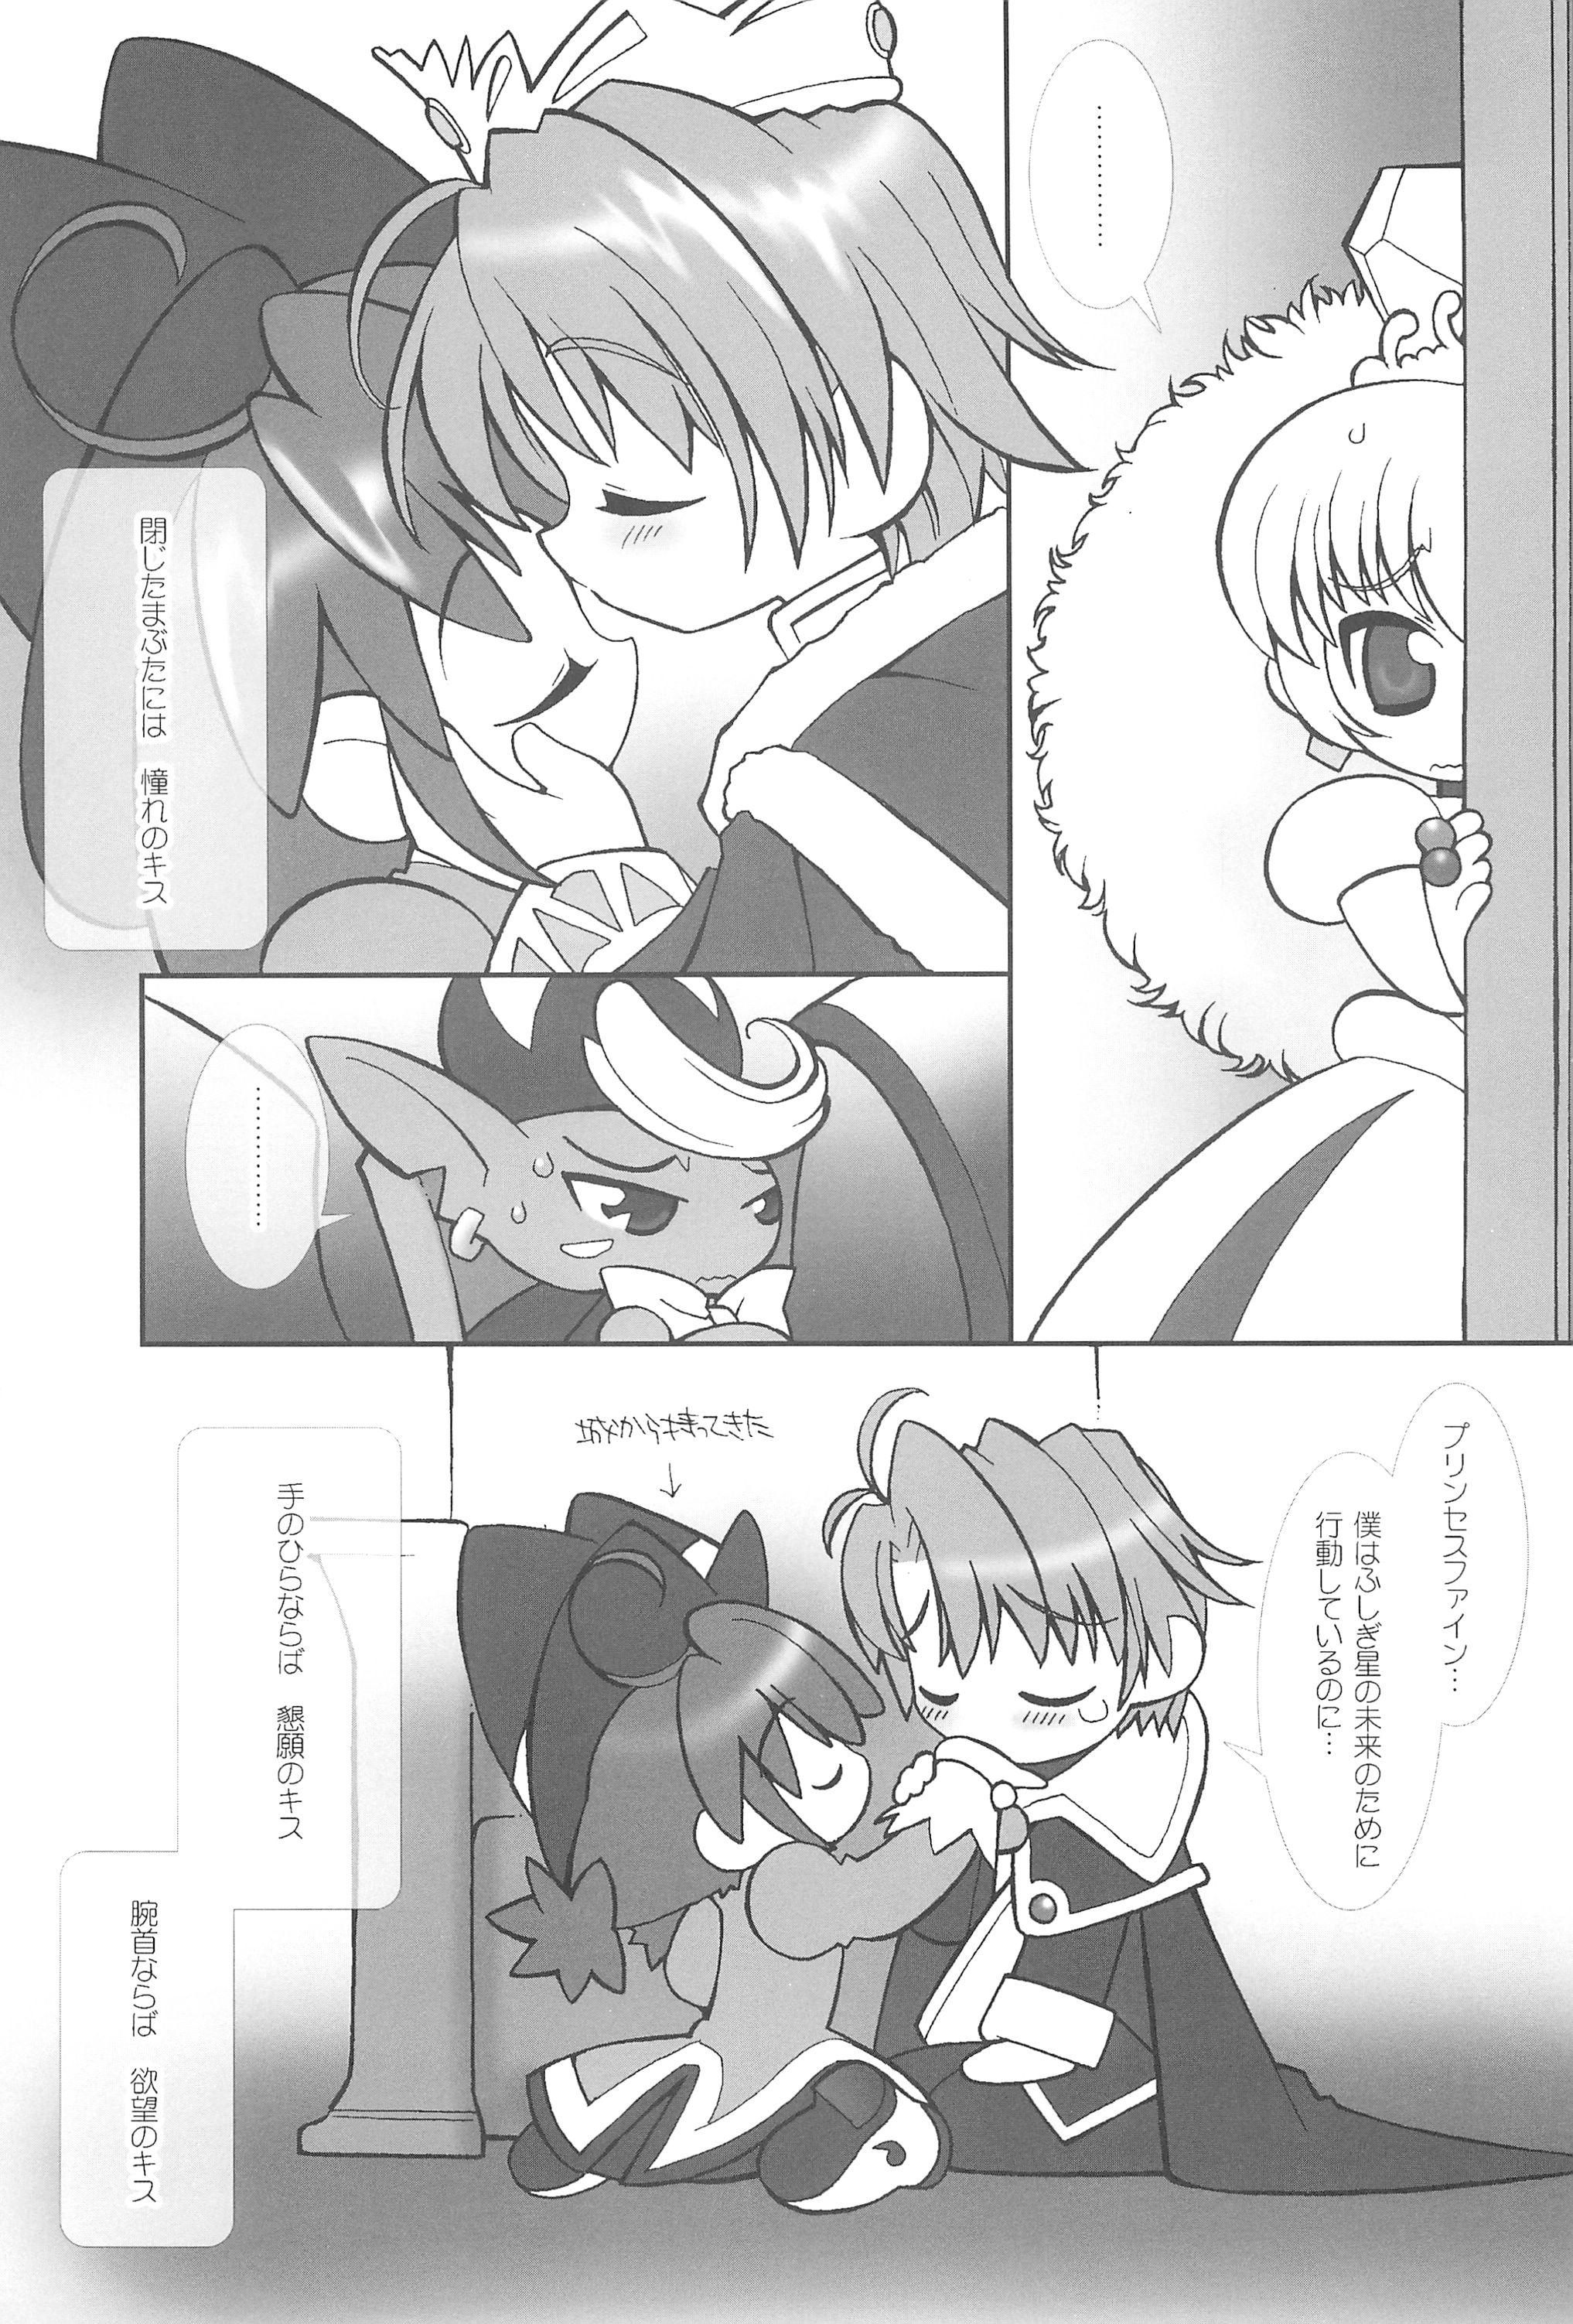 Flogging Tsuki no Ura de Aimashou #6 - Let's go to the Darkside of the Moon #6 - Fushigiboshi no futagohime Roludo - Page 7